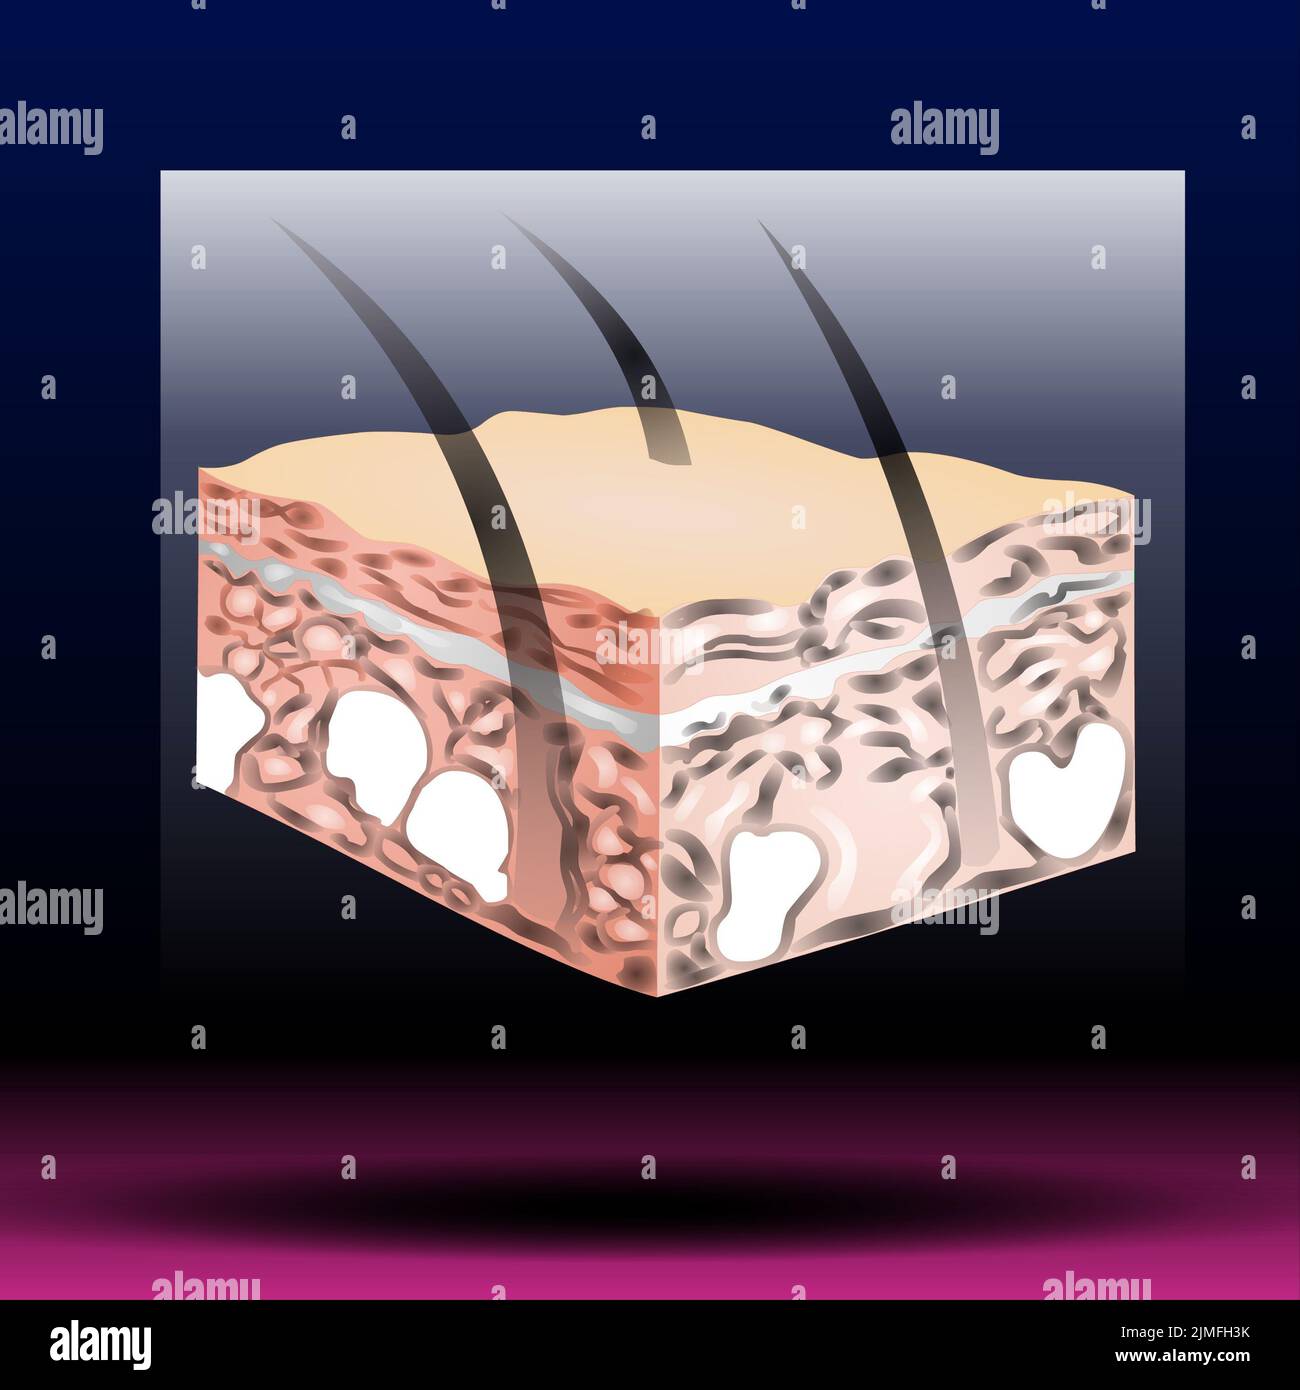 Anatomie de la peau. Derme cutané normal humain couches adipeux épiderme récentes infographie biologique vectorielle. Banque D'Images